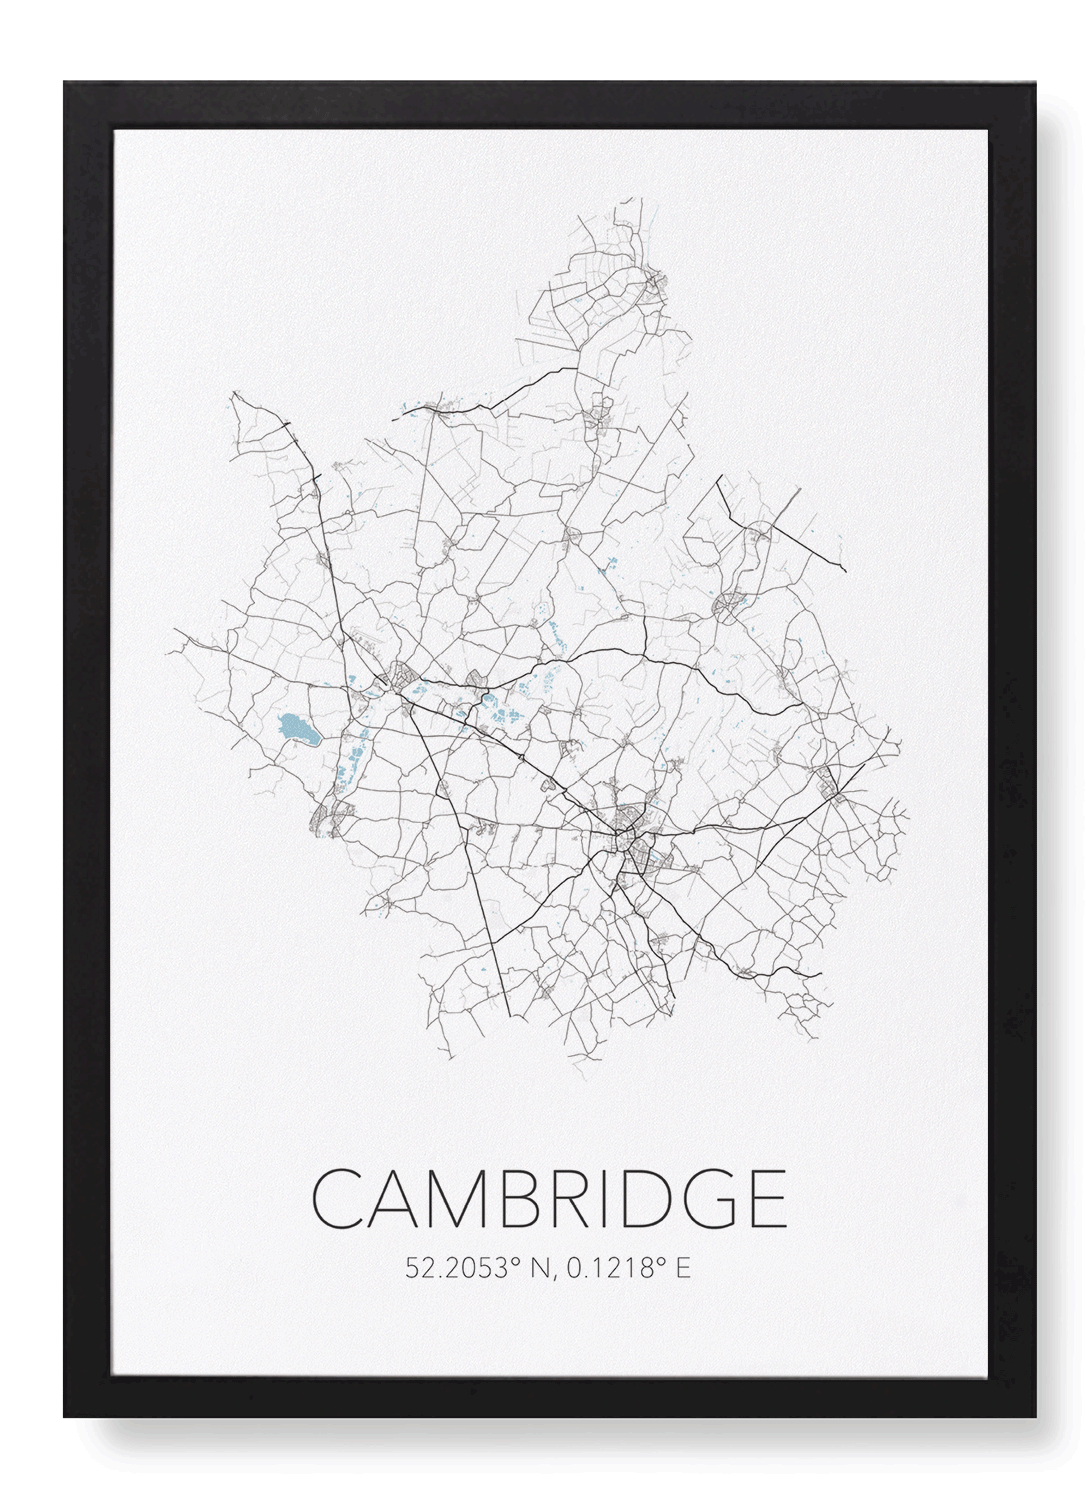 CAMBRIDGE CUTOUT